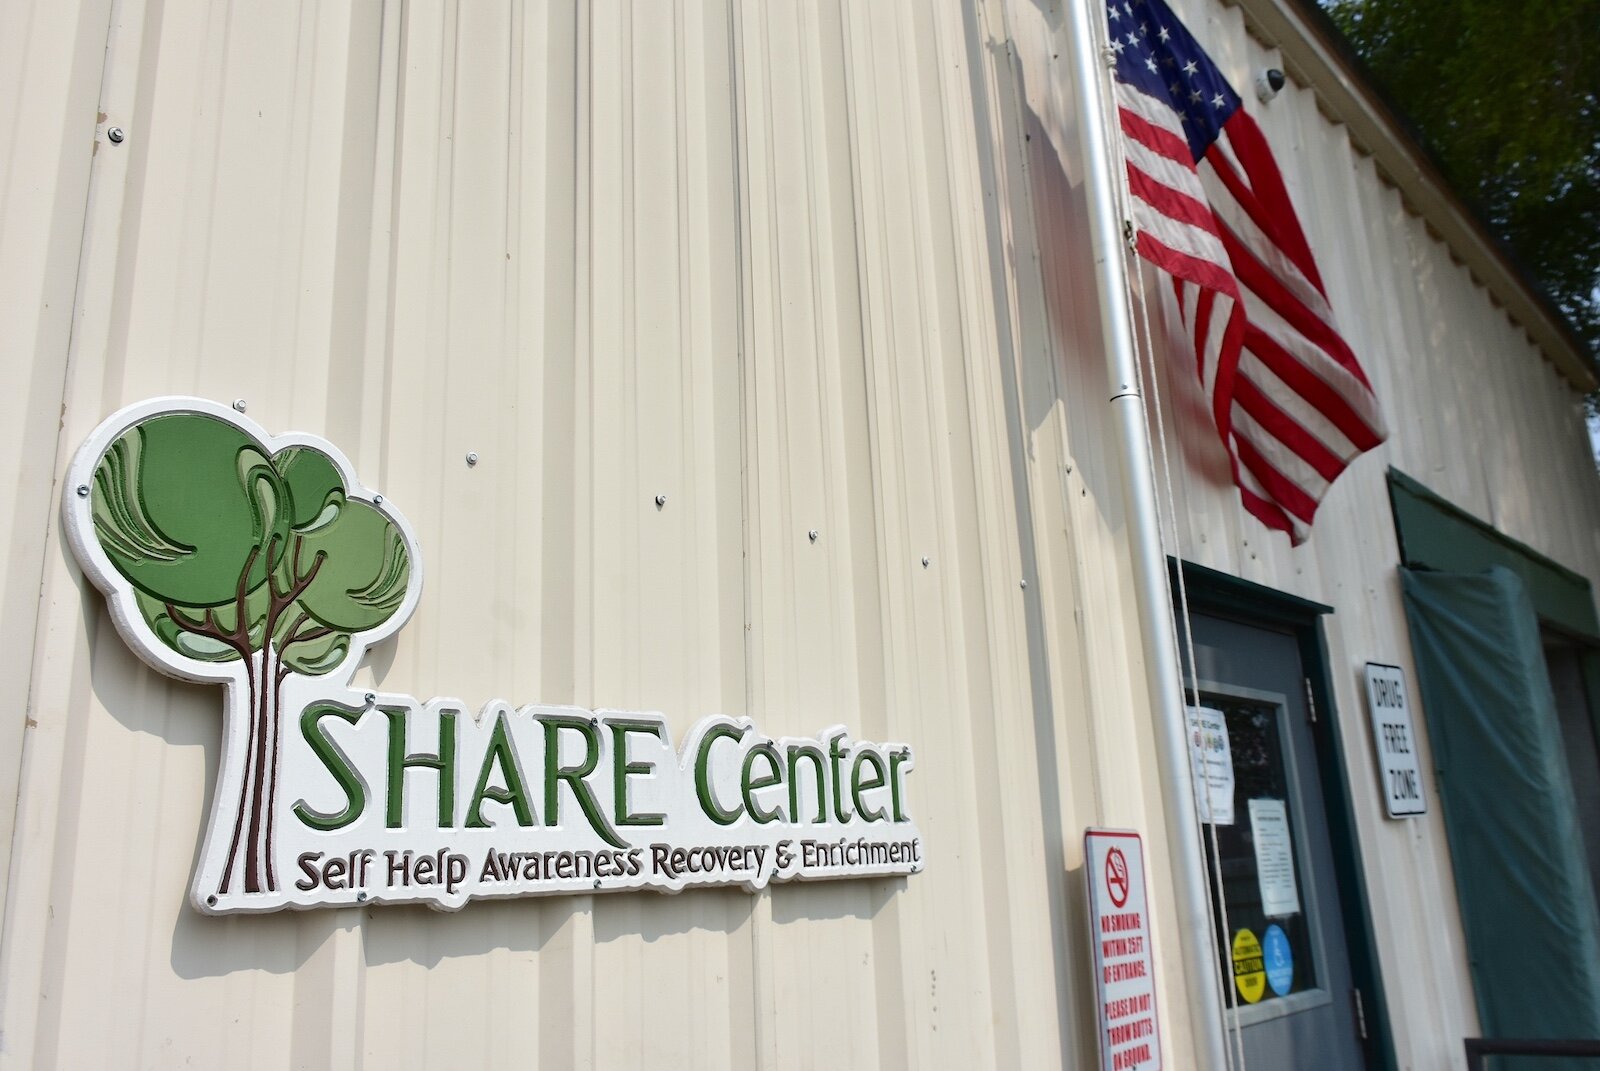 Centro SHARE, cerca del centro de Battle Creek, ofrece servicios que ayudan a las personas a superar las crisis satisfaciendo sus necesidades básicas, eliminando barreras y estabilizando sus ingresos y su vivienda.